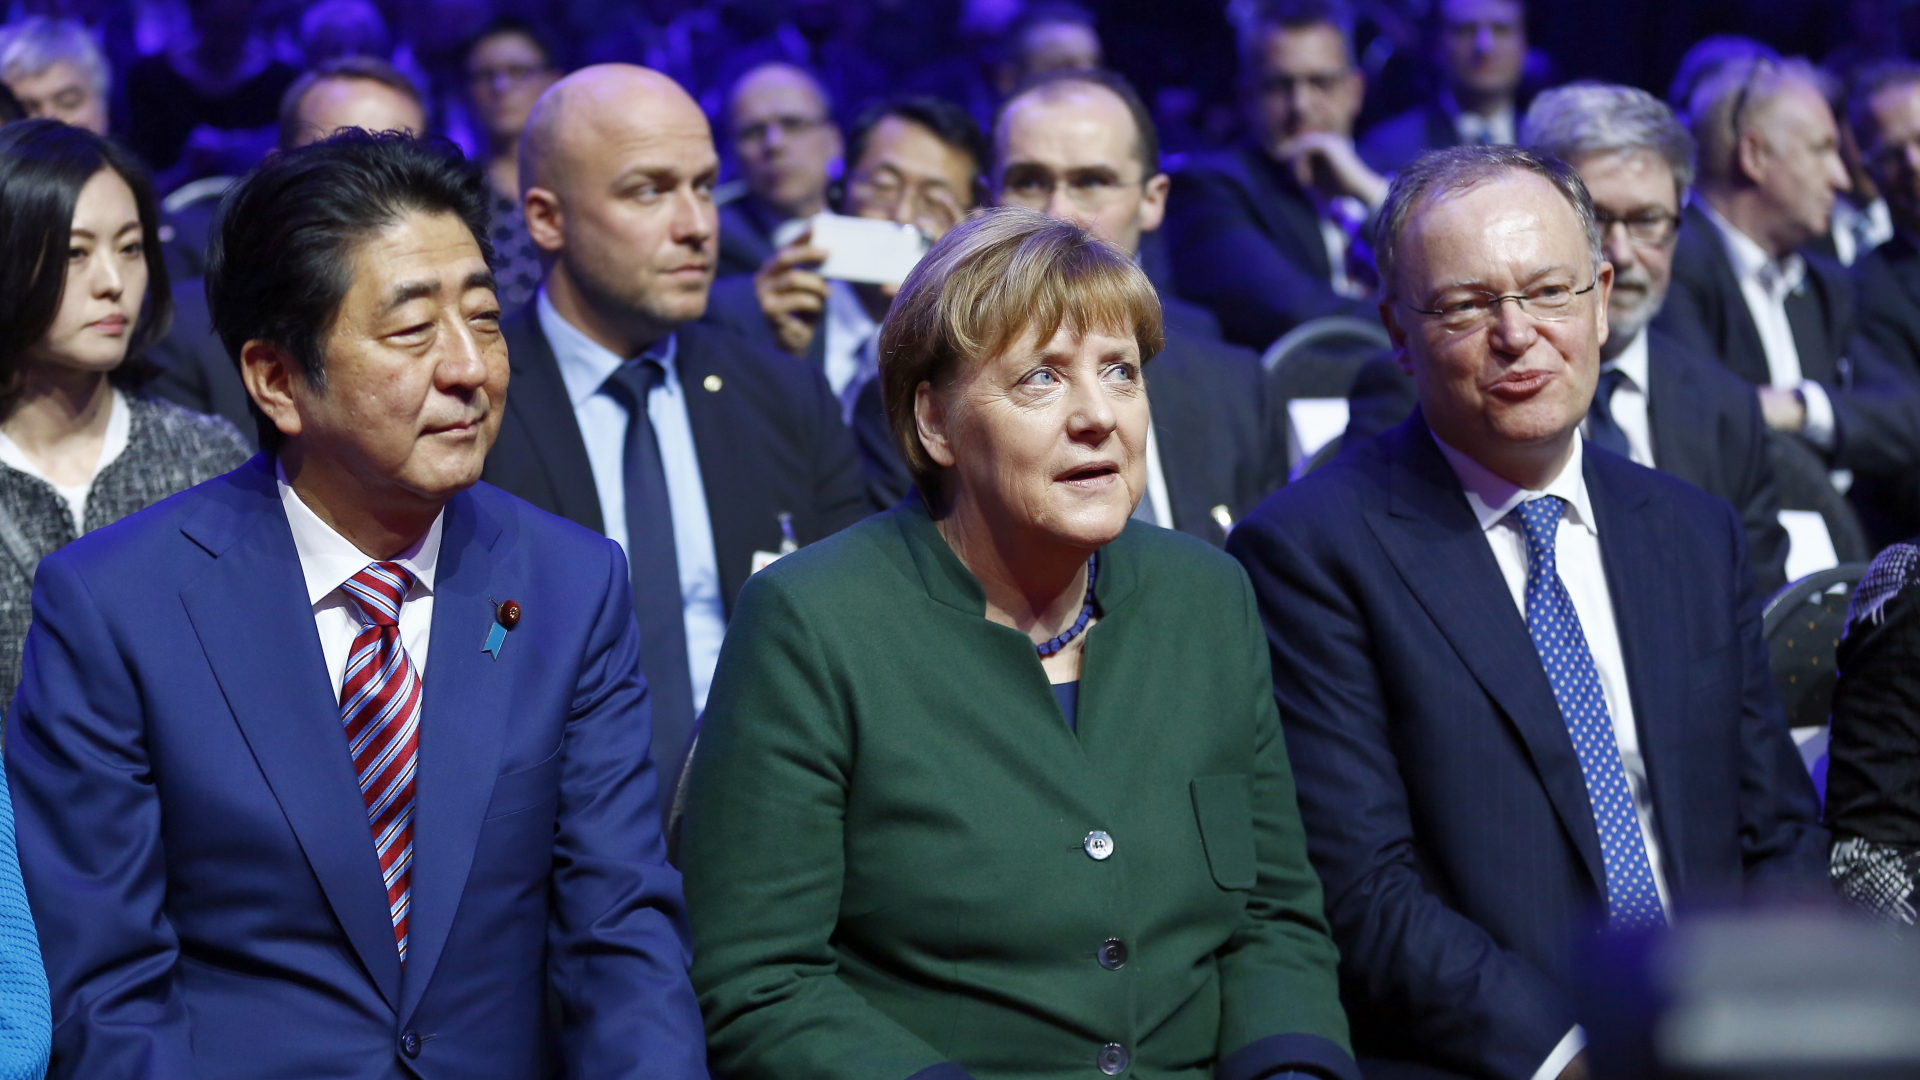 IT-Messe in Hannover: Merkel und Abe eröffnen CeBIT